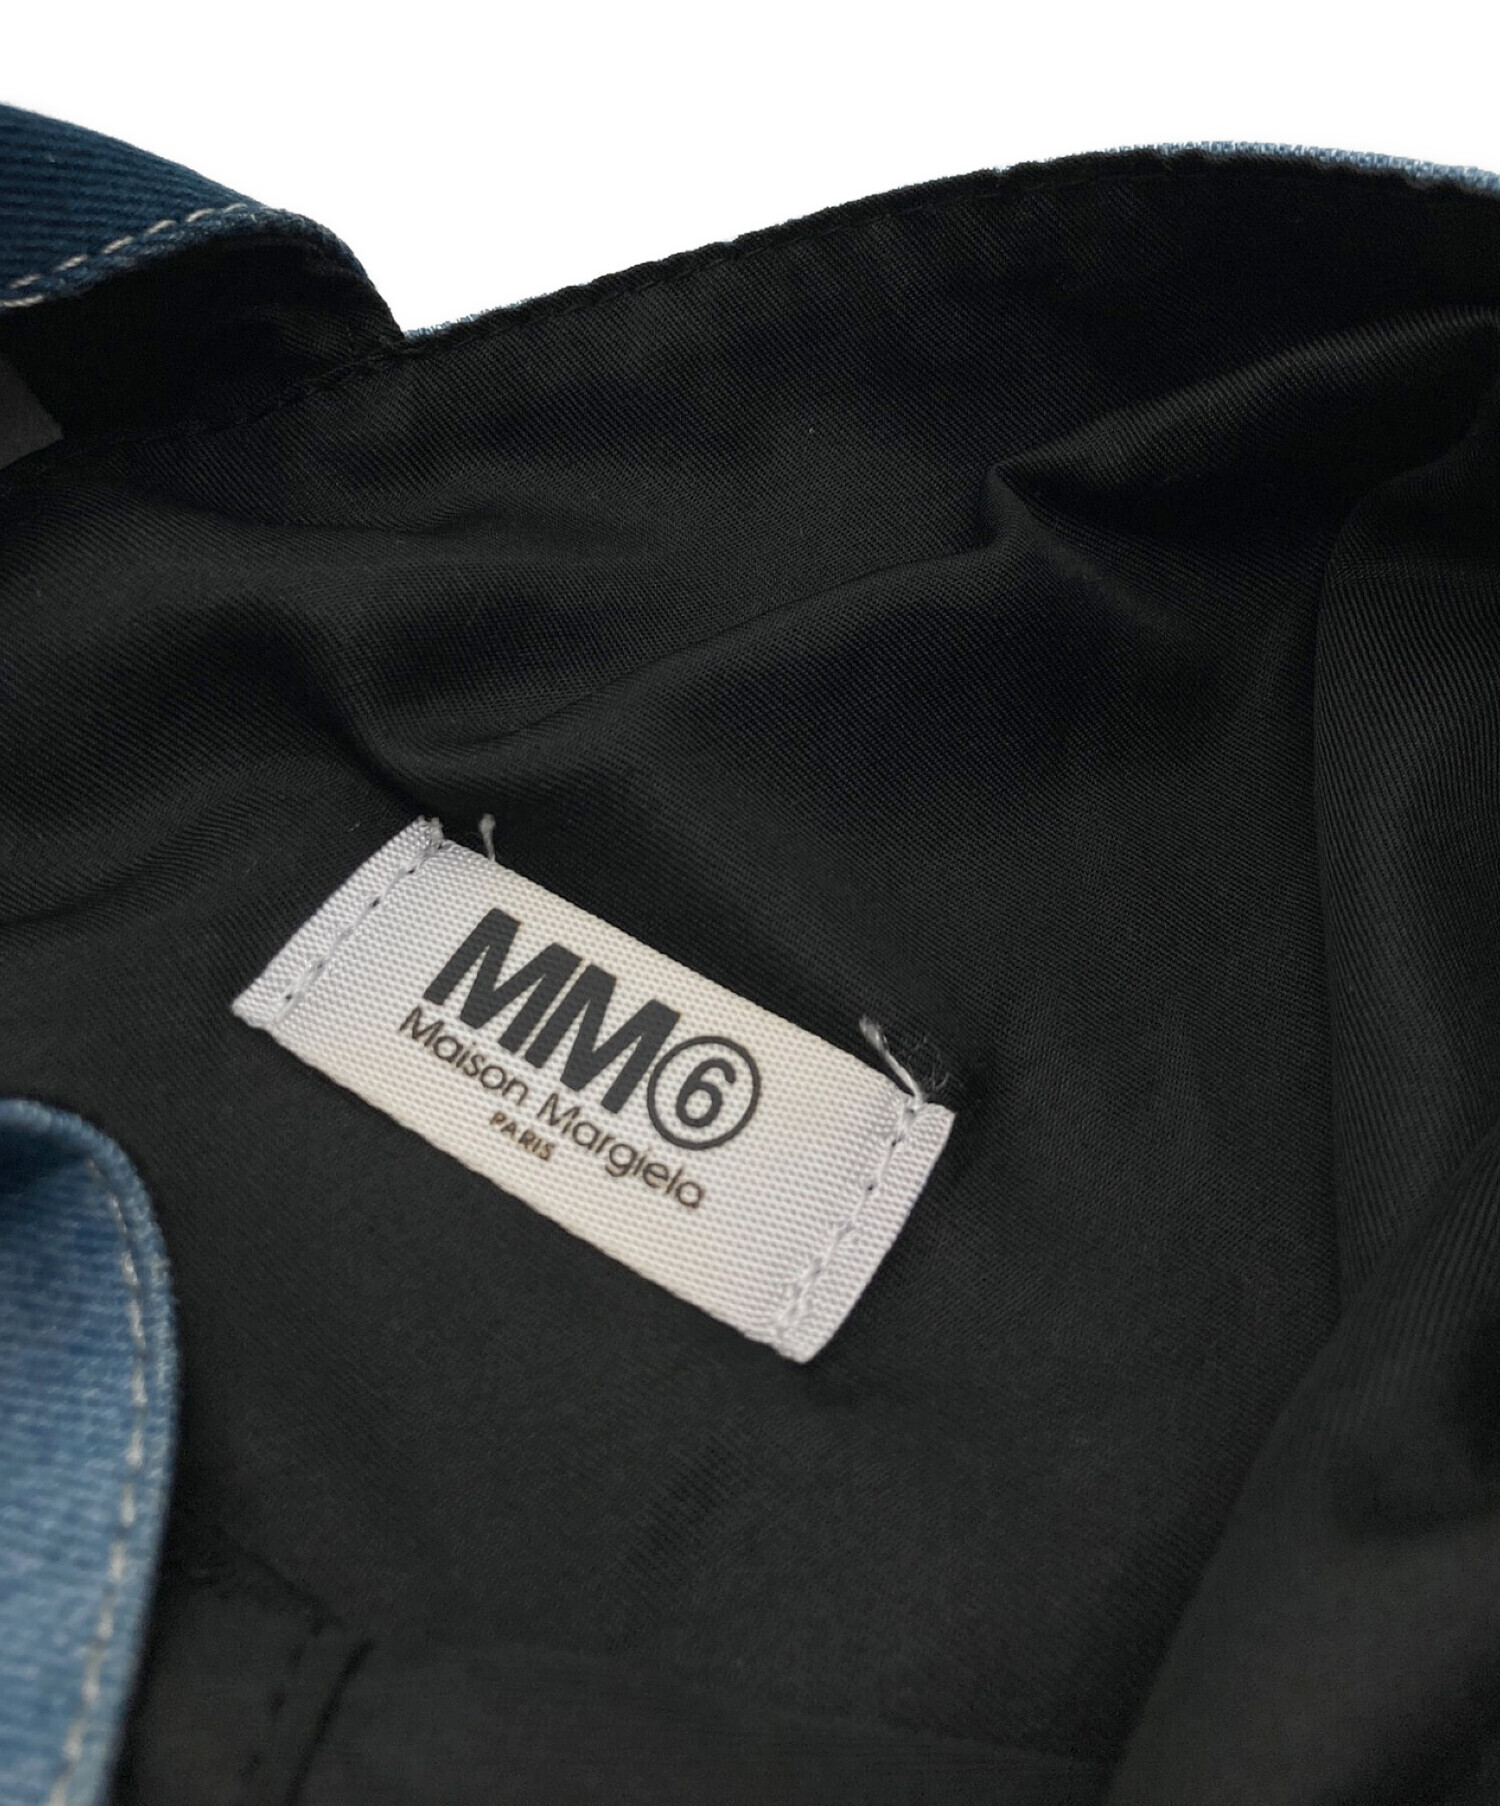 MM6 Maison Margiela (エムエムシックス メゾンマルジェラ) ジャパニーズトートバッグ スカイブルー サイズ:なし